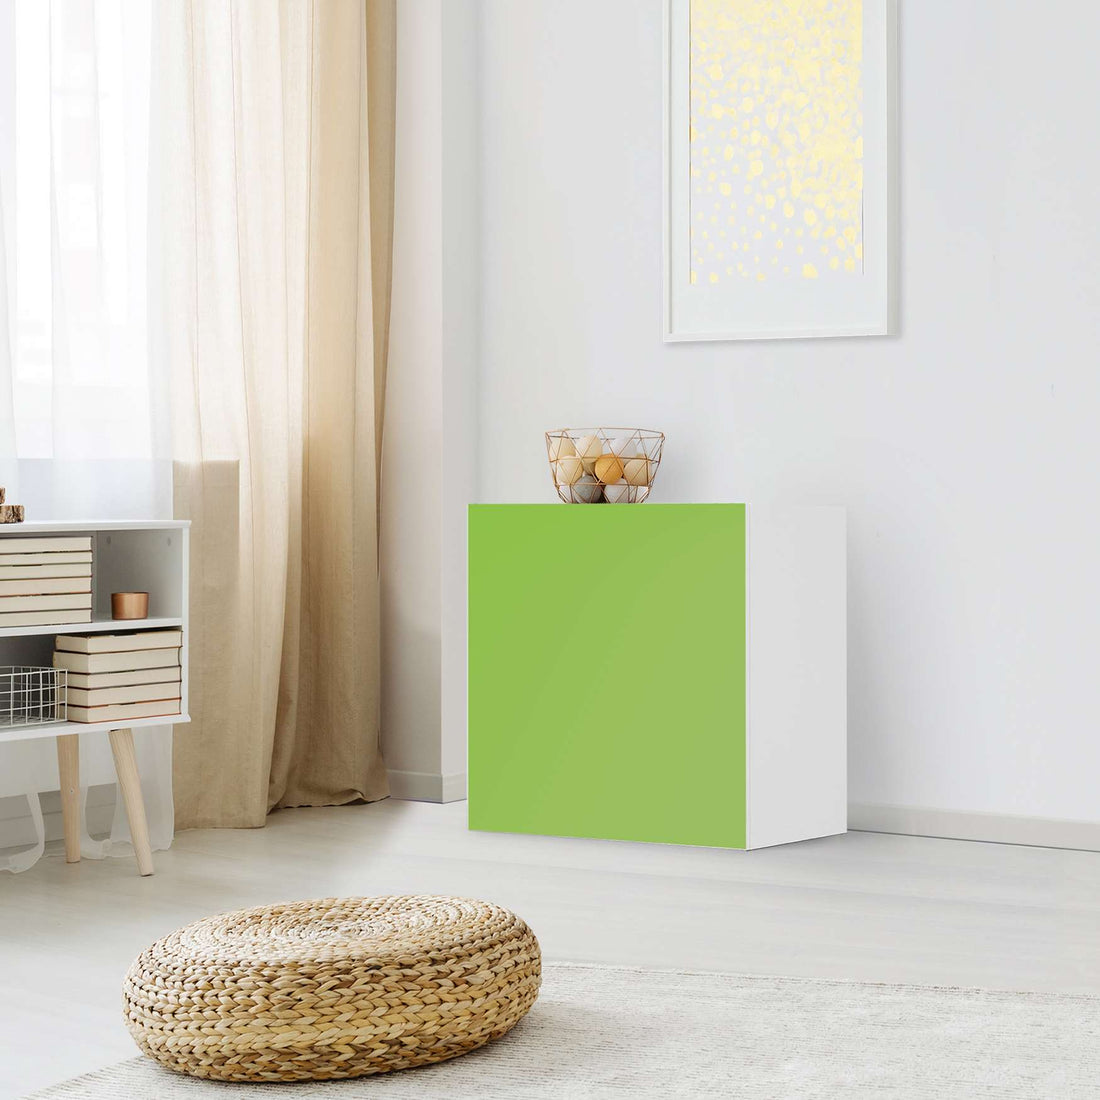 Klebefolie für Möbel Hellgrün Dark - IKEA Besta Regal 1 Türe - Wohnzimmer